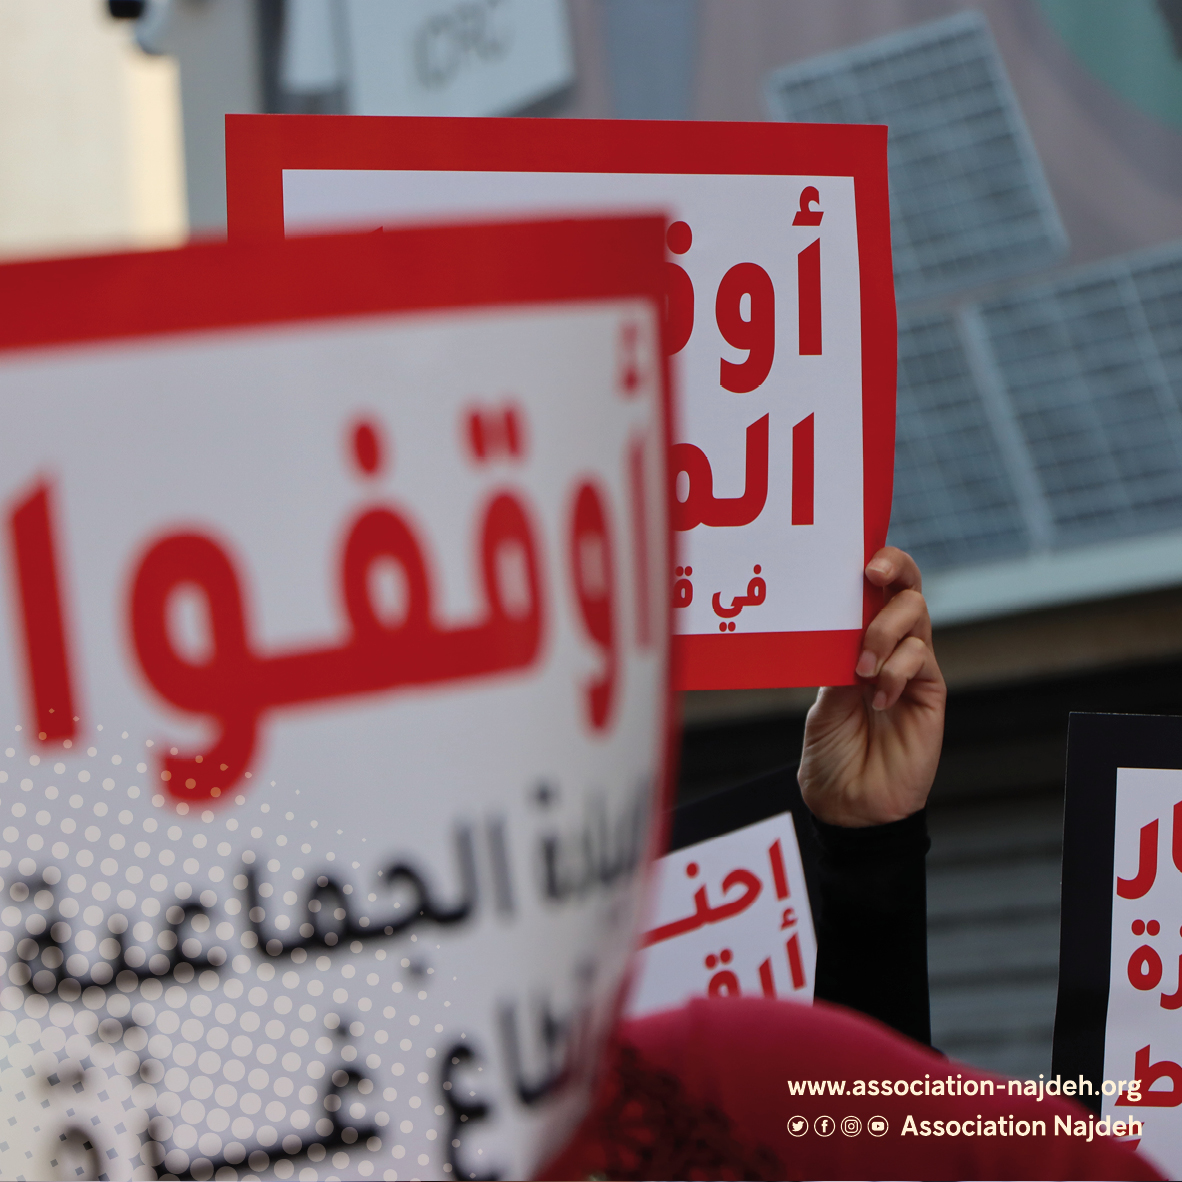 وقفة تضامنية أمام مقر اللجنة الدولية للصليب الاحمر في بيروت لمطالبة بتأمين الحماية للمستشفيات والمراكز الصحية في قطاع غـزة